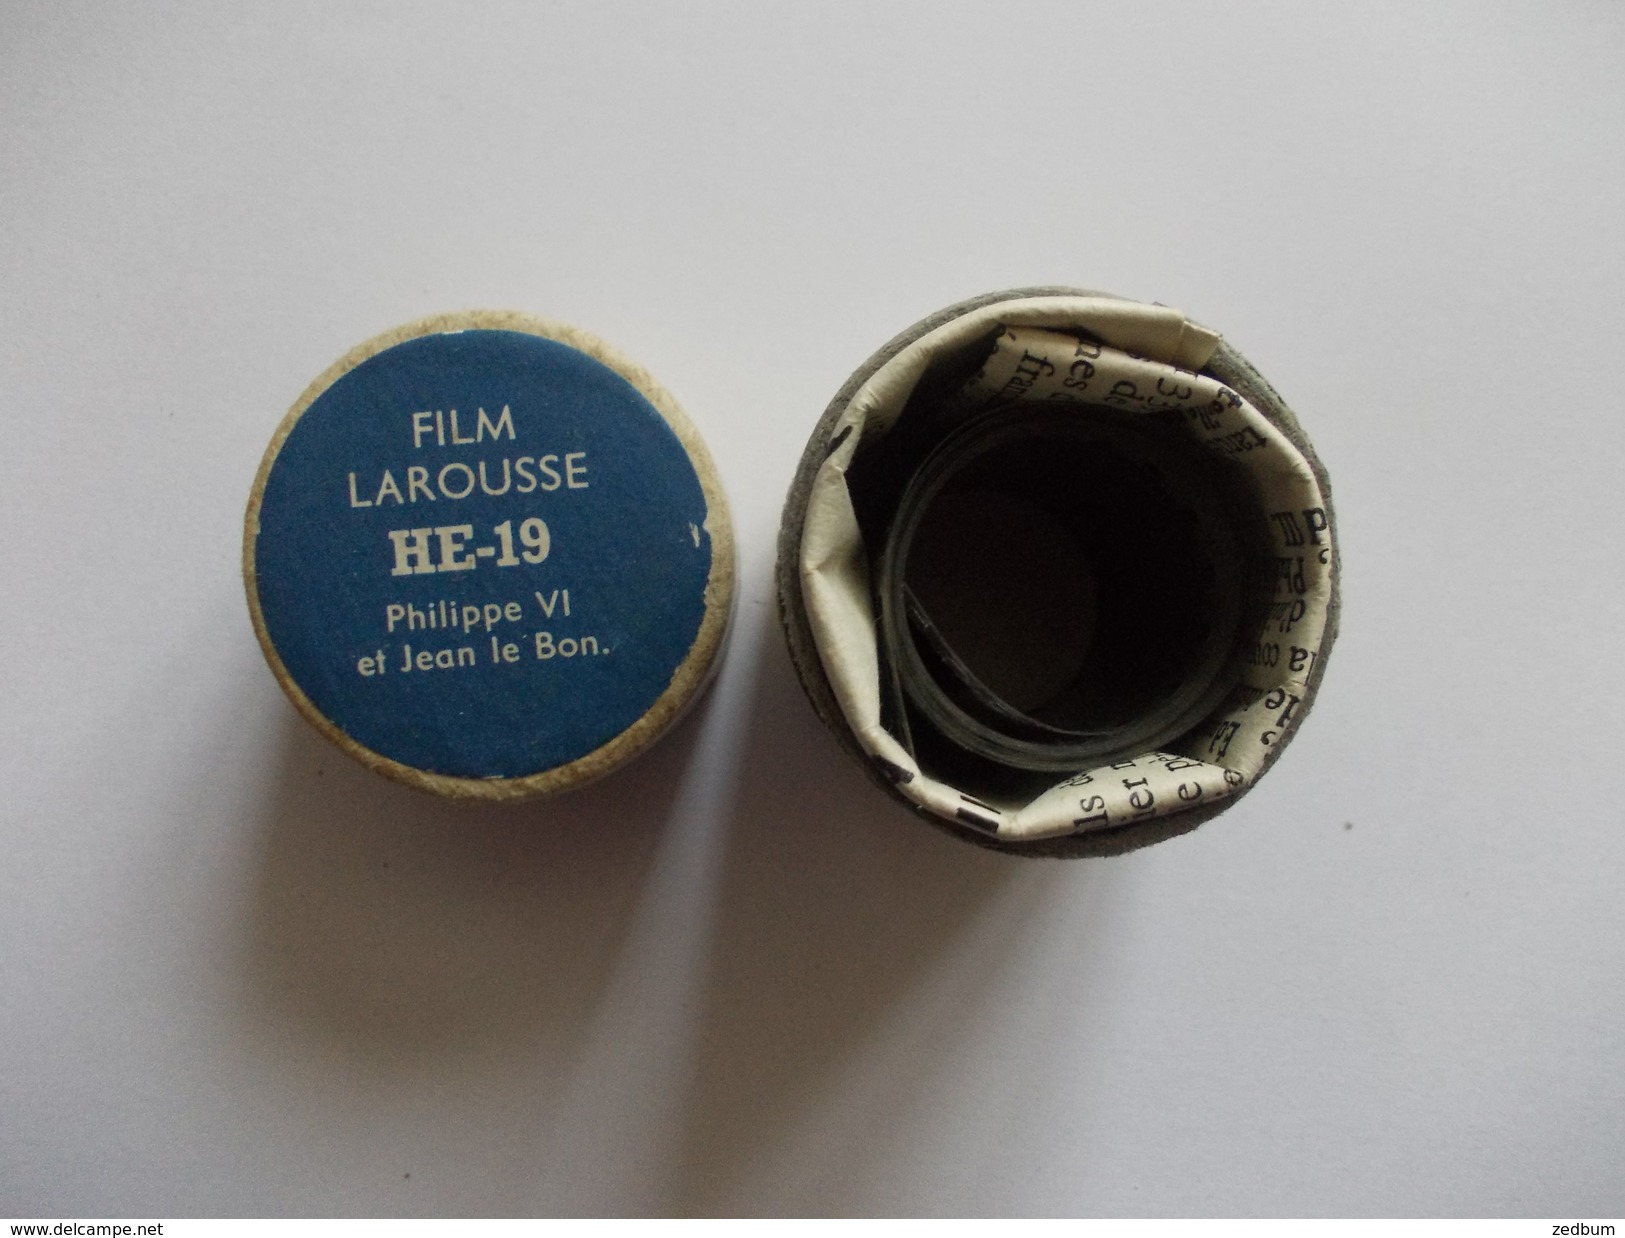 FILM FIXE Larousse HE-19 Philippe VI Et Jean Le Bon - 35mm -16mm - 9,5+8+S8mm Film Rolls